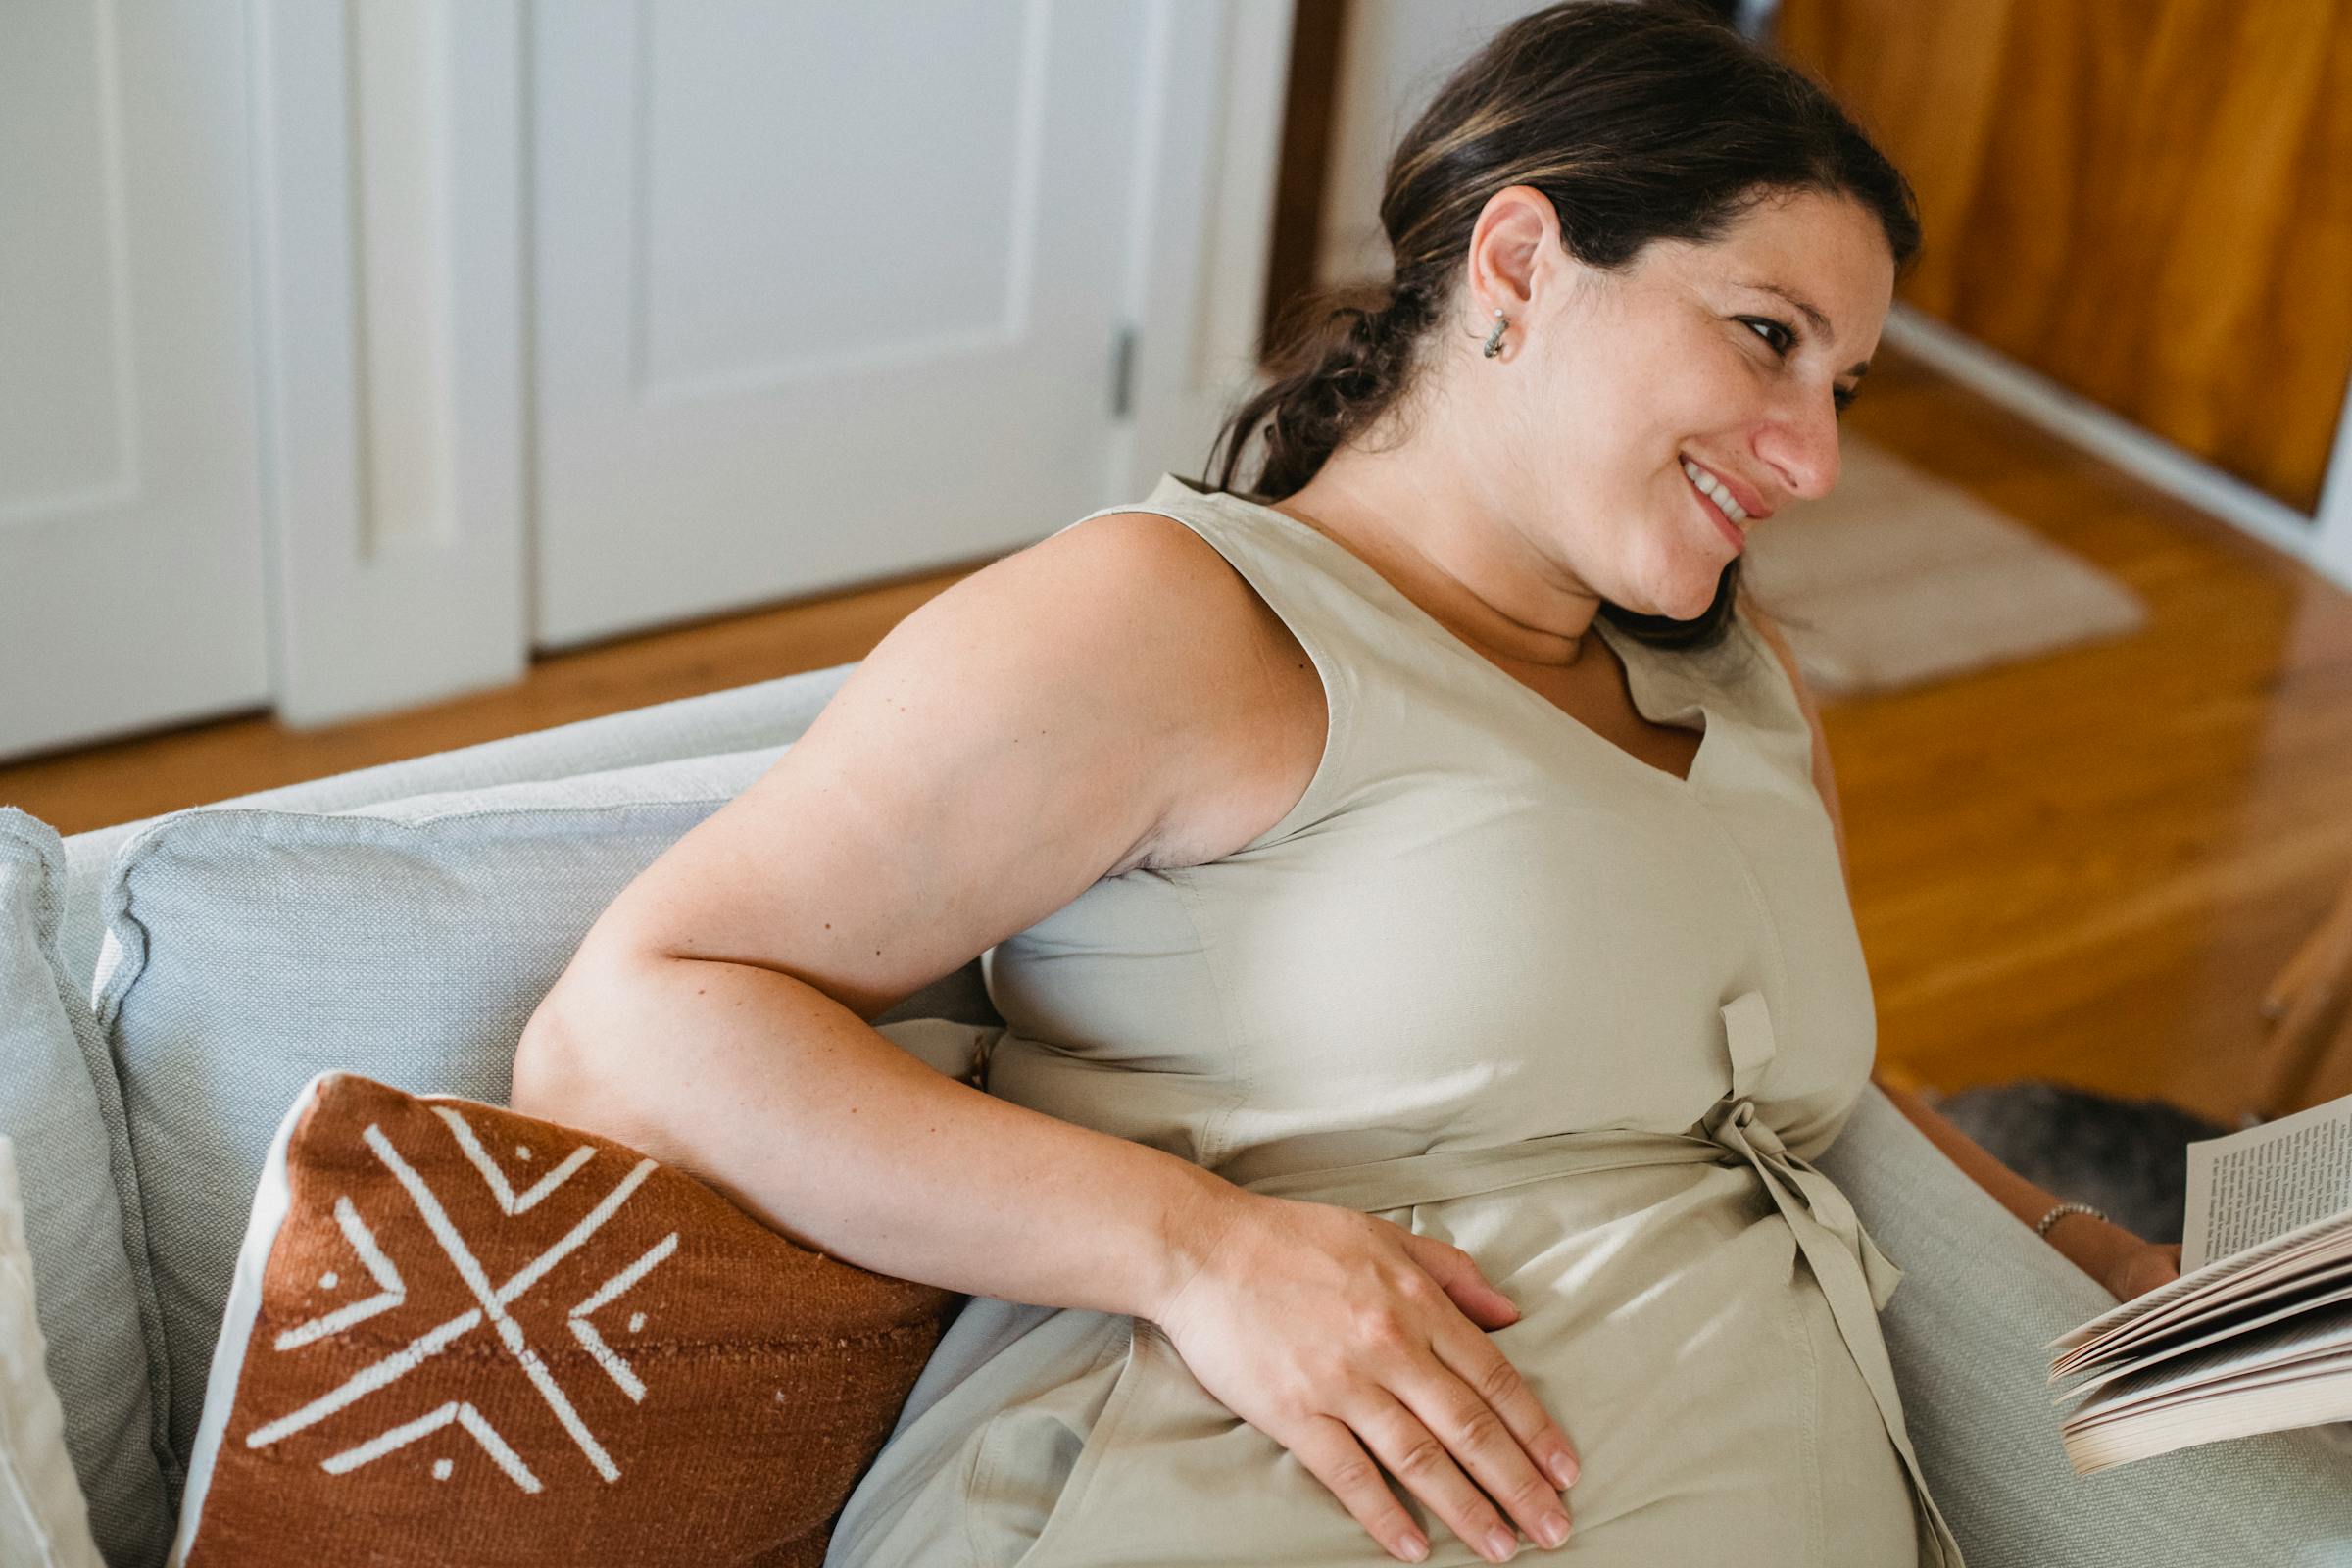 Una mujer embarazada sonriendo y sentada en un sofá | Fuente: Pexels